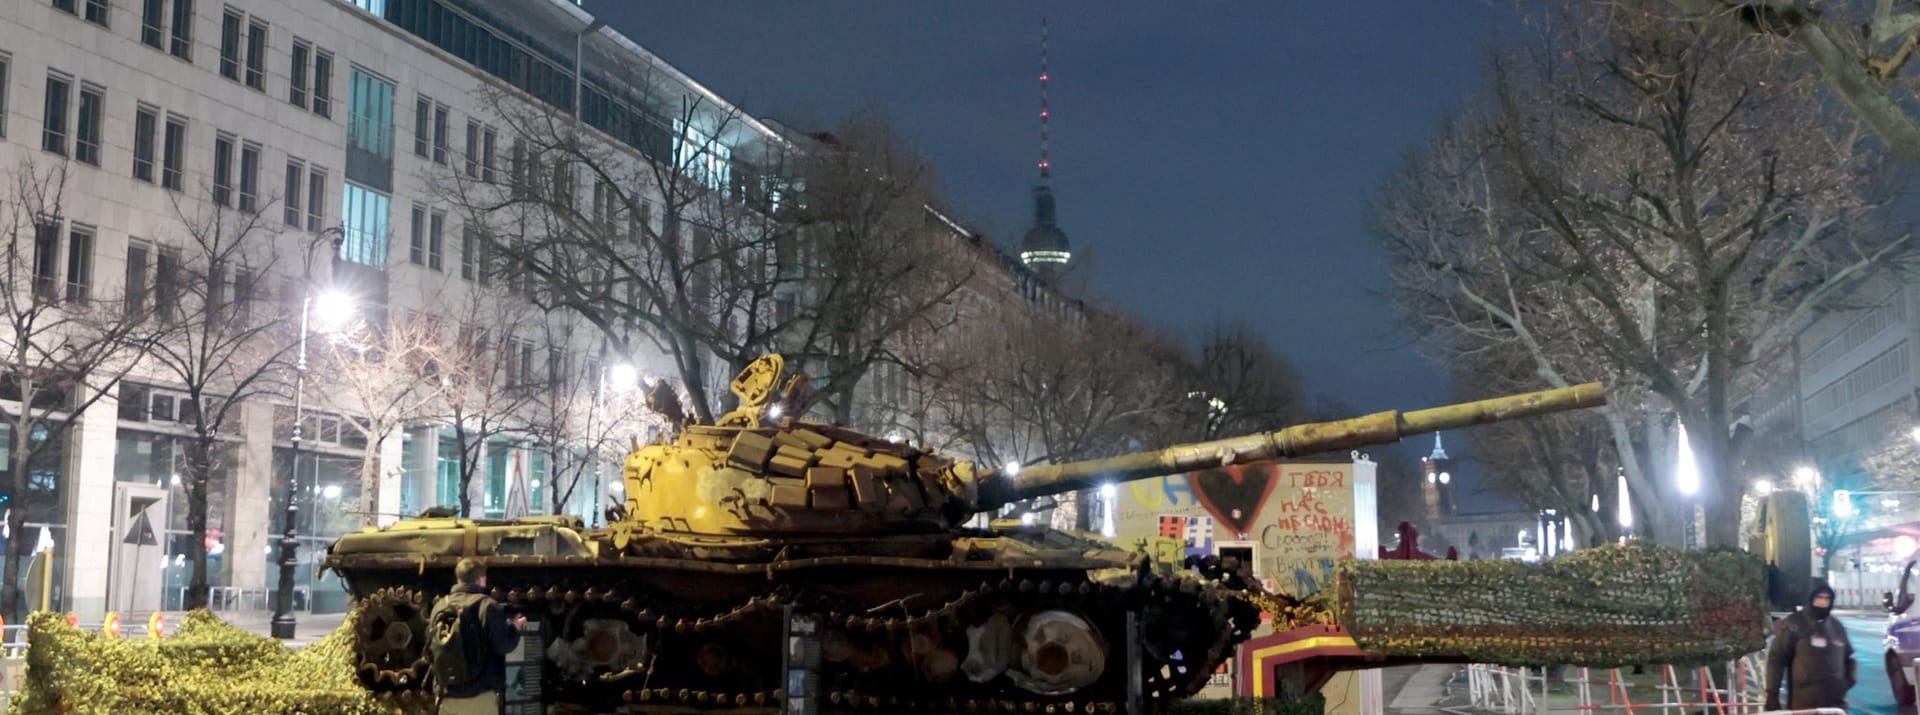 24. Februar: Es ist ein Jahr her, dass russische Truppen in die Ukraine einmarschierten und einen brutalen Krieg entfesselten. Aus Protest haben Aktivisten in Berlin einen kaputten russischen Panzer vor der russischen Botschaft aufgestellt.